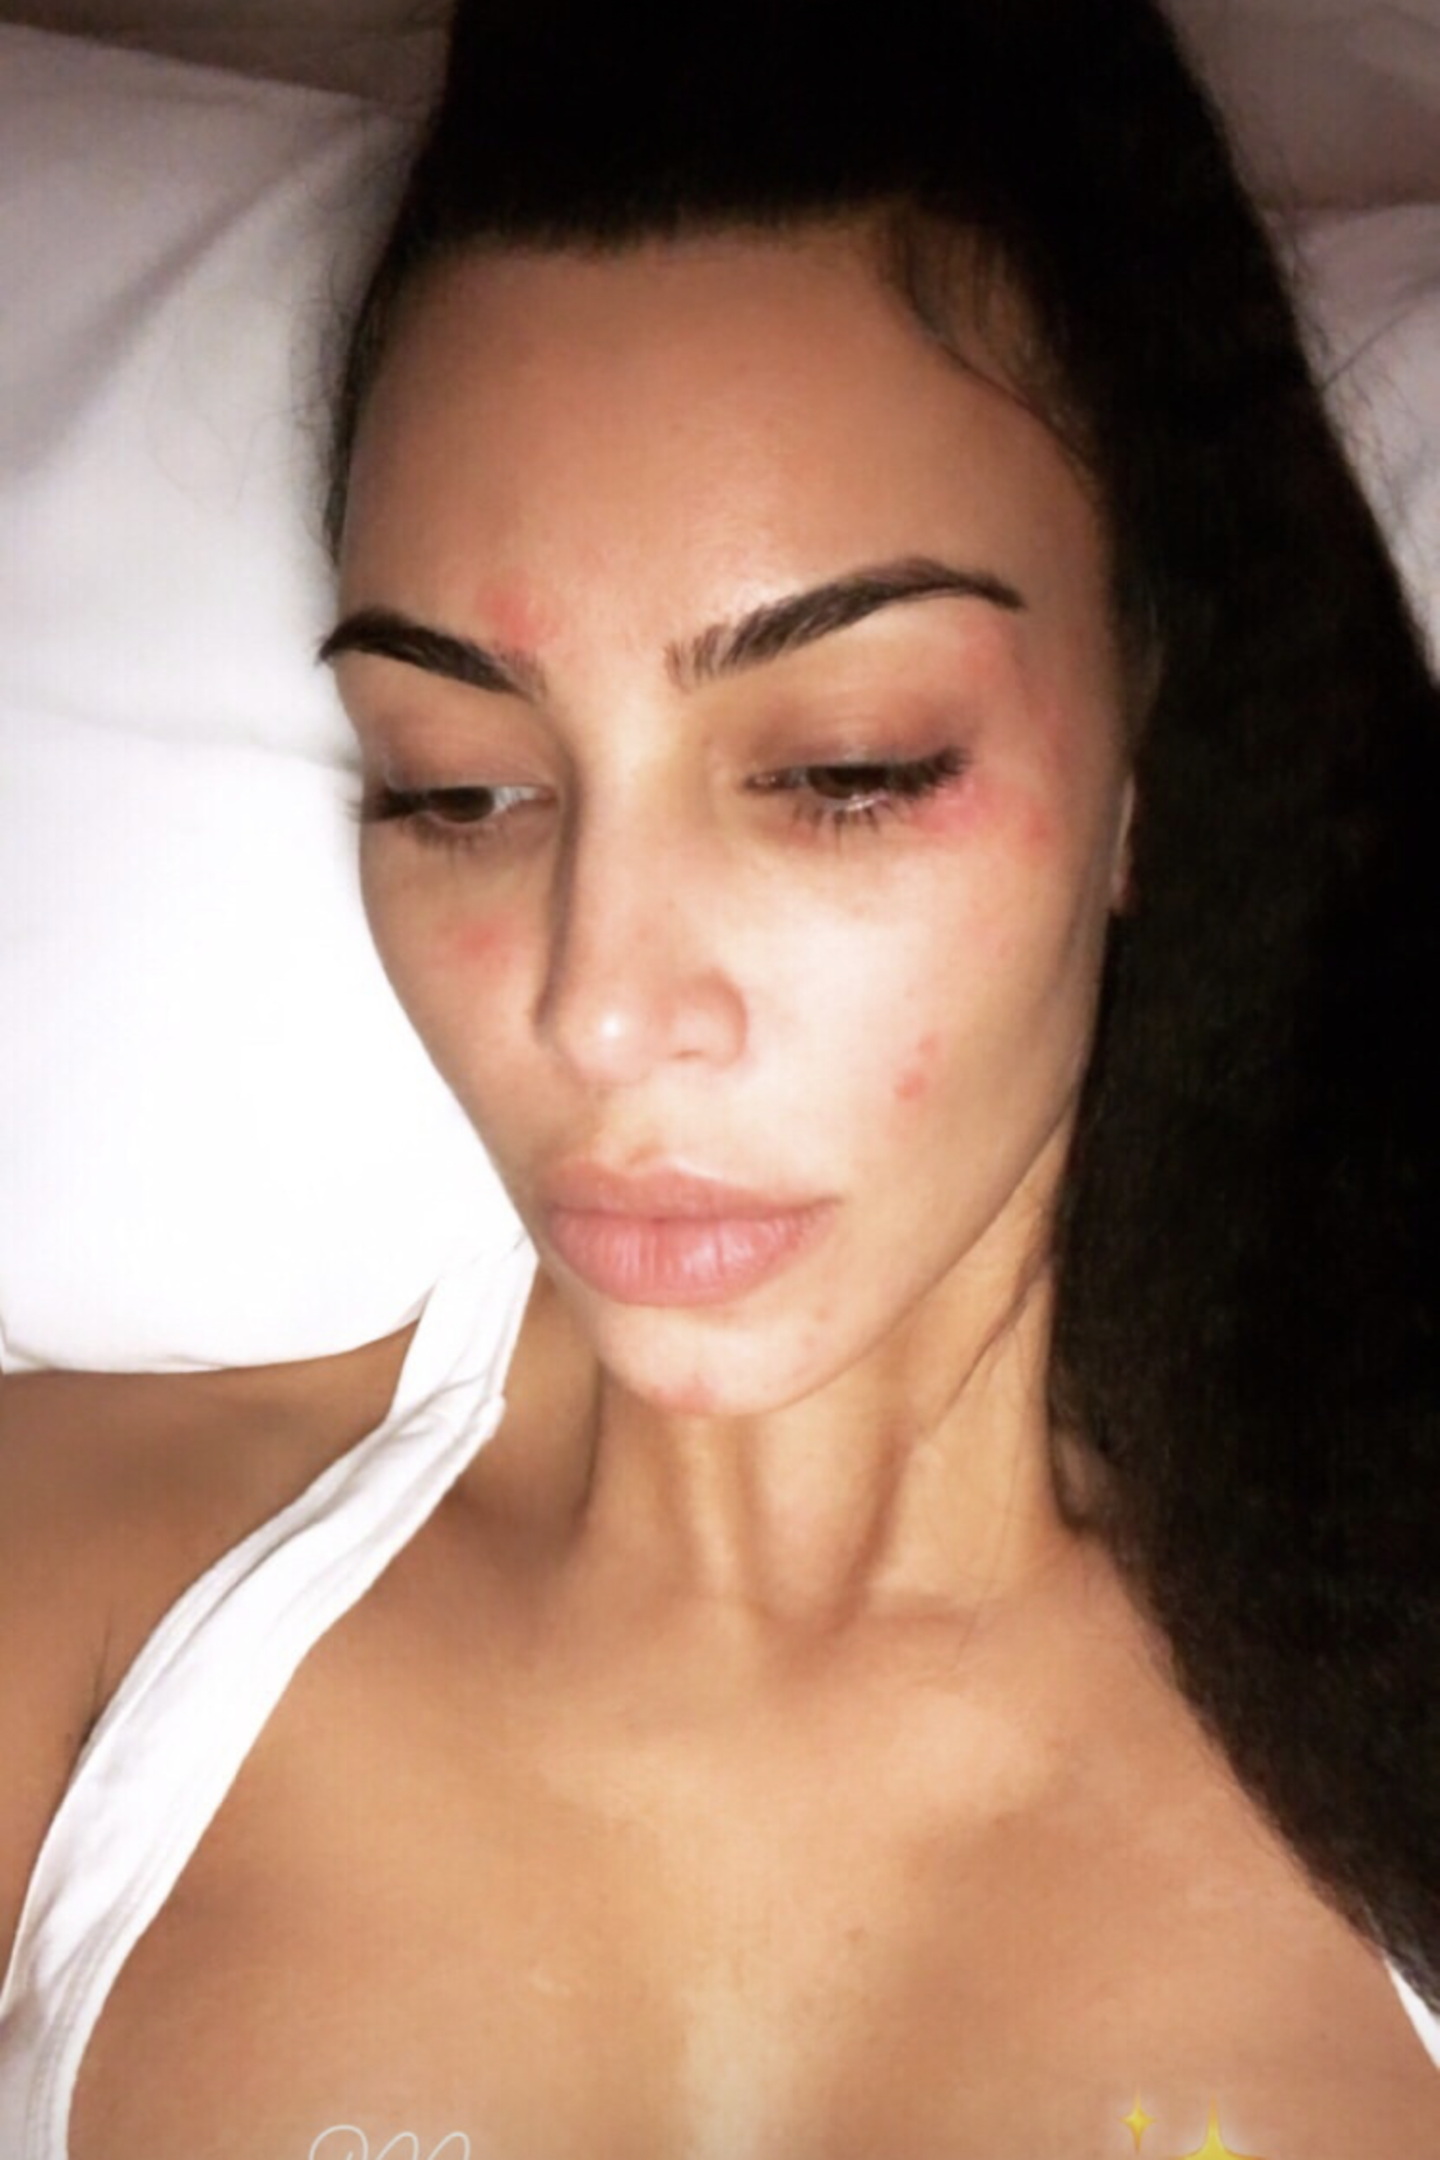 Doch auch Kim bleibt von Hautproblemen nicht verschont. Die roten Flecken in ihrem Gesicht sind Schuppenflechte. Der Reality-Star kämpft seit Jahren gegen die unheilbare Krankheit. "Schuppenflechte am Morgen", schreibt Kim zu diesem Selfie.